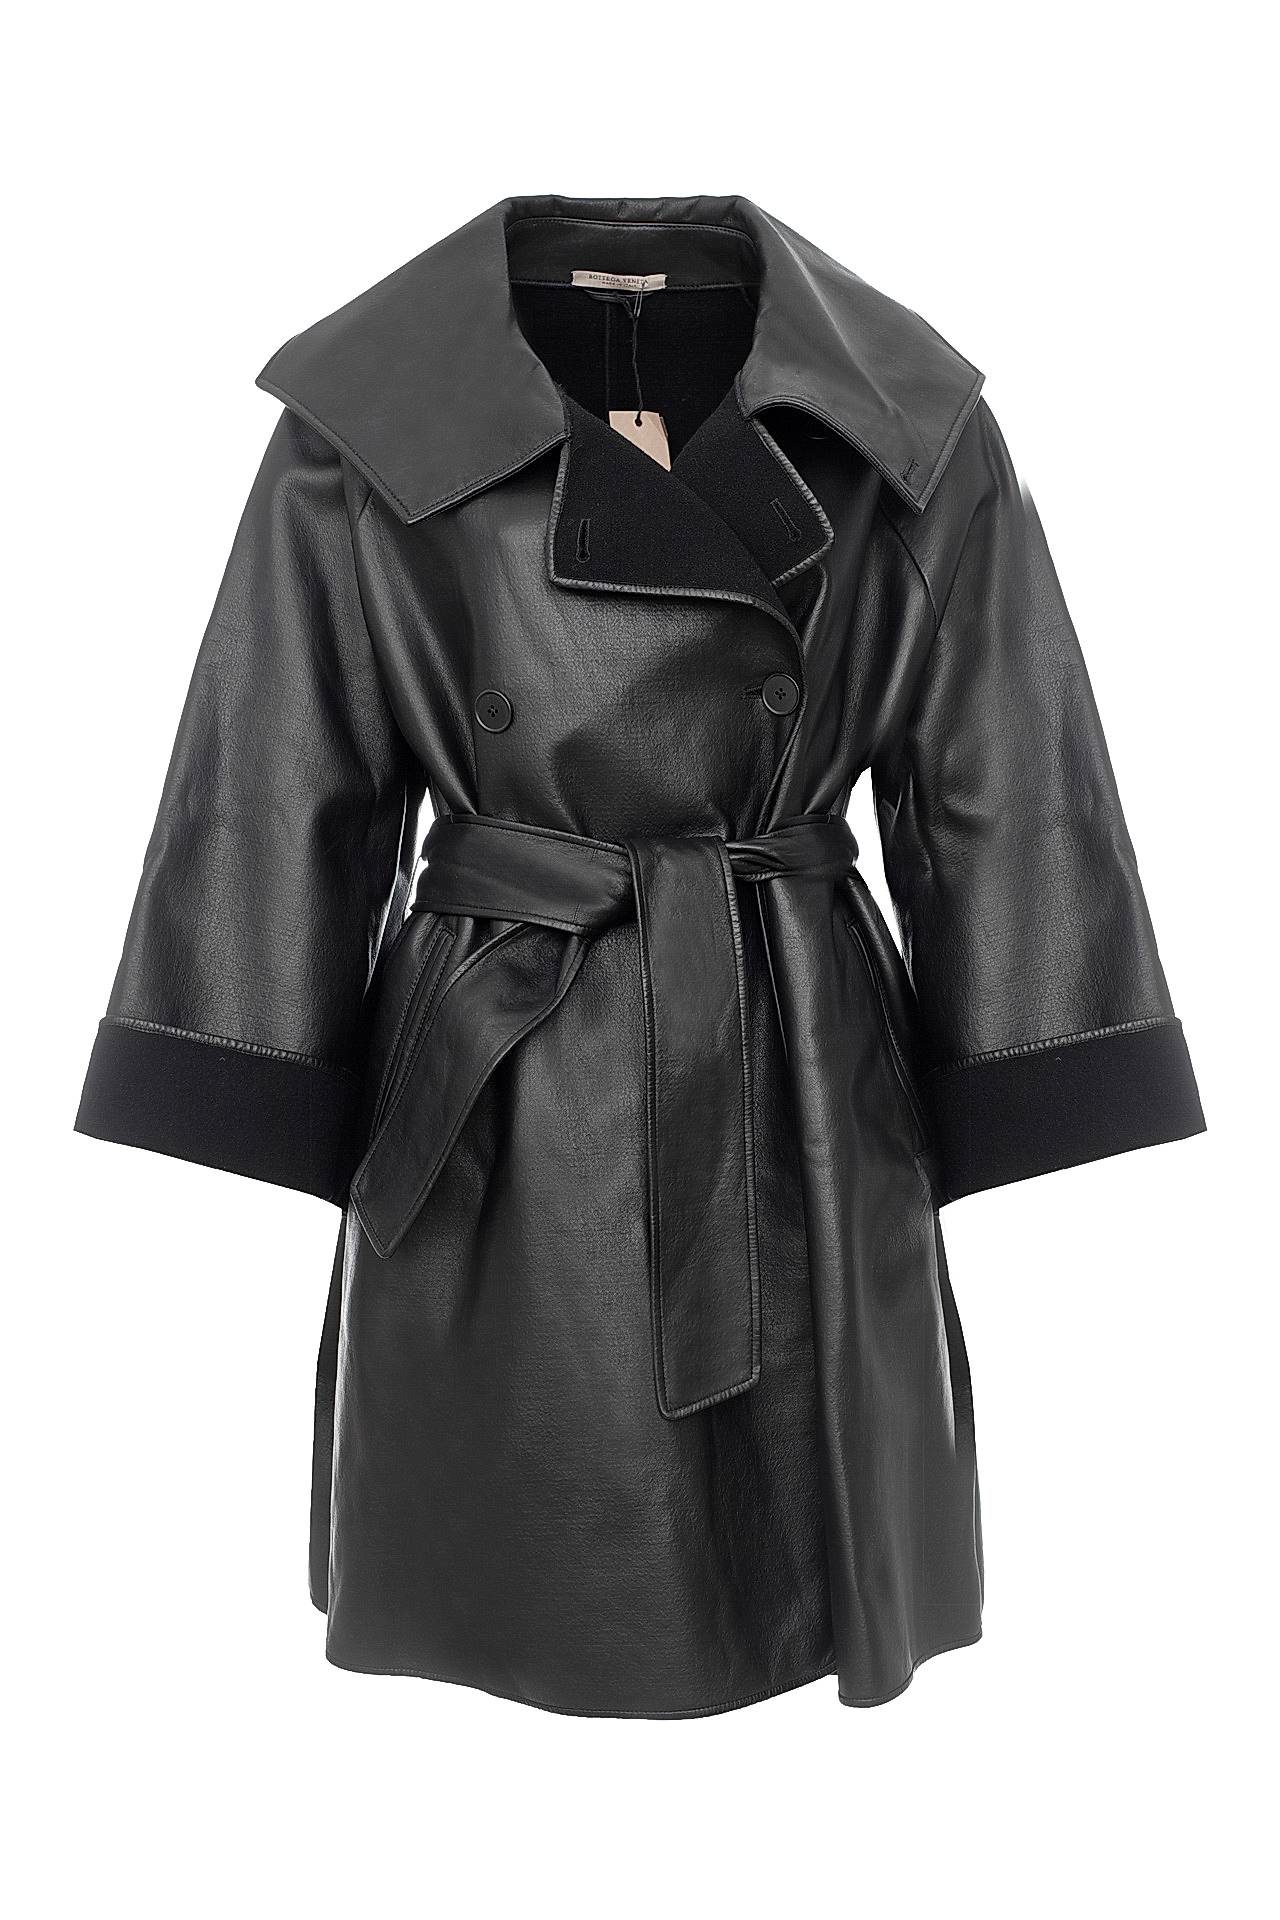 Одежда женская Пальто BOTTEGA VENETA (202441VIAC0/12.2). Купить за 118000 руб.